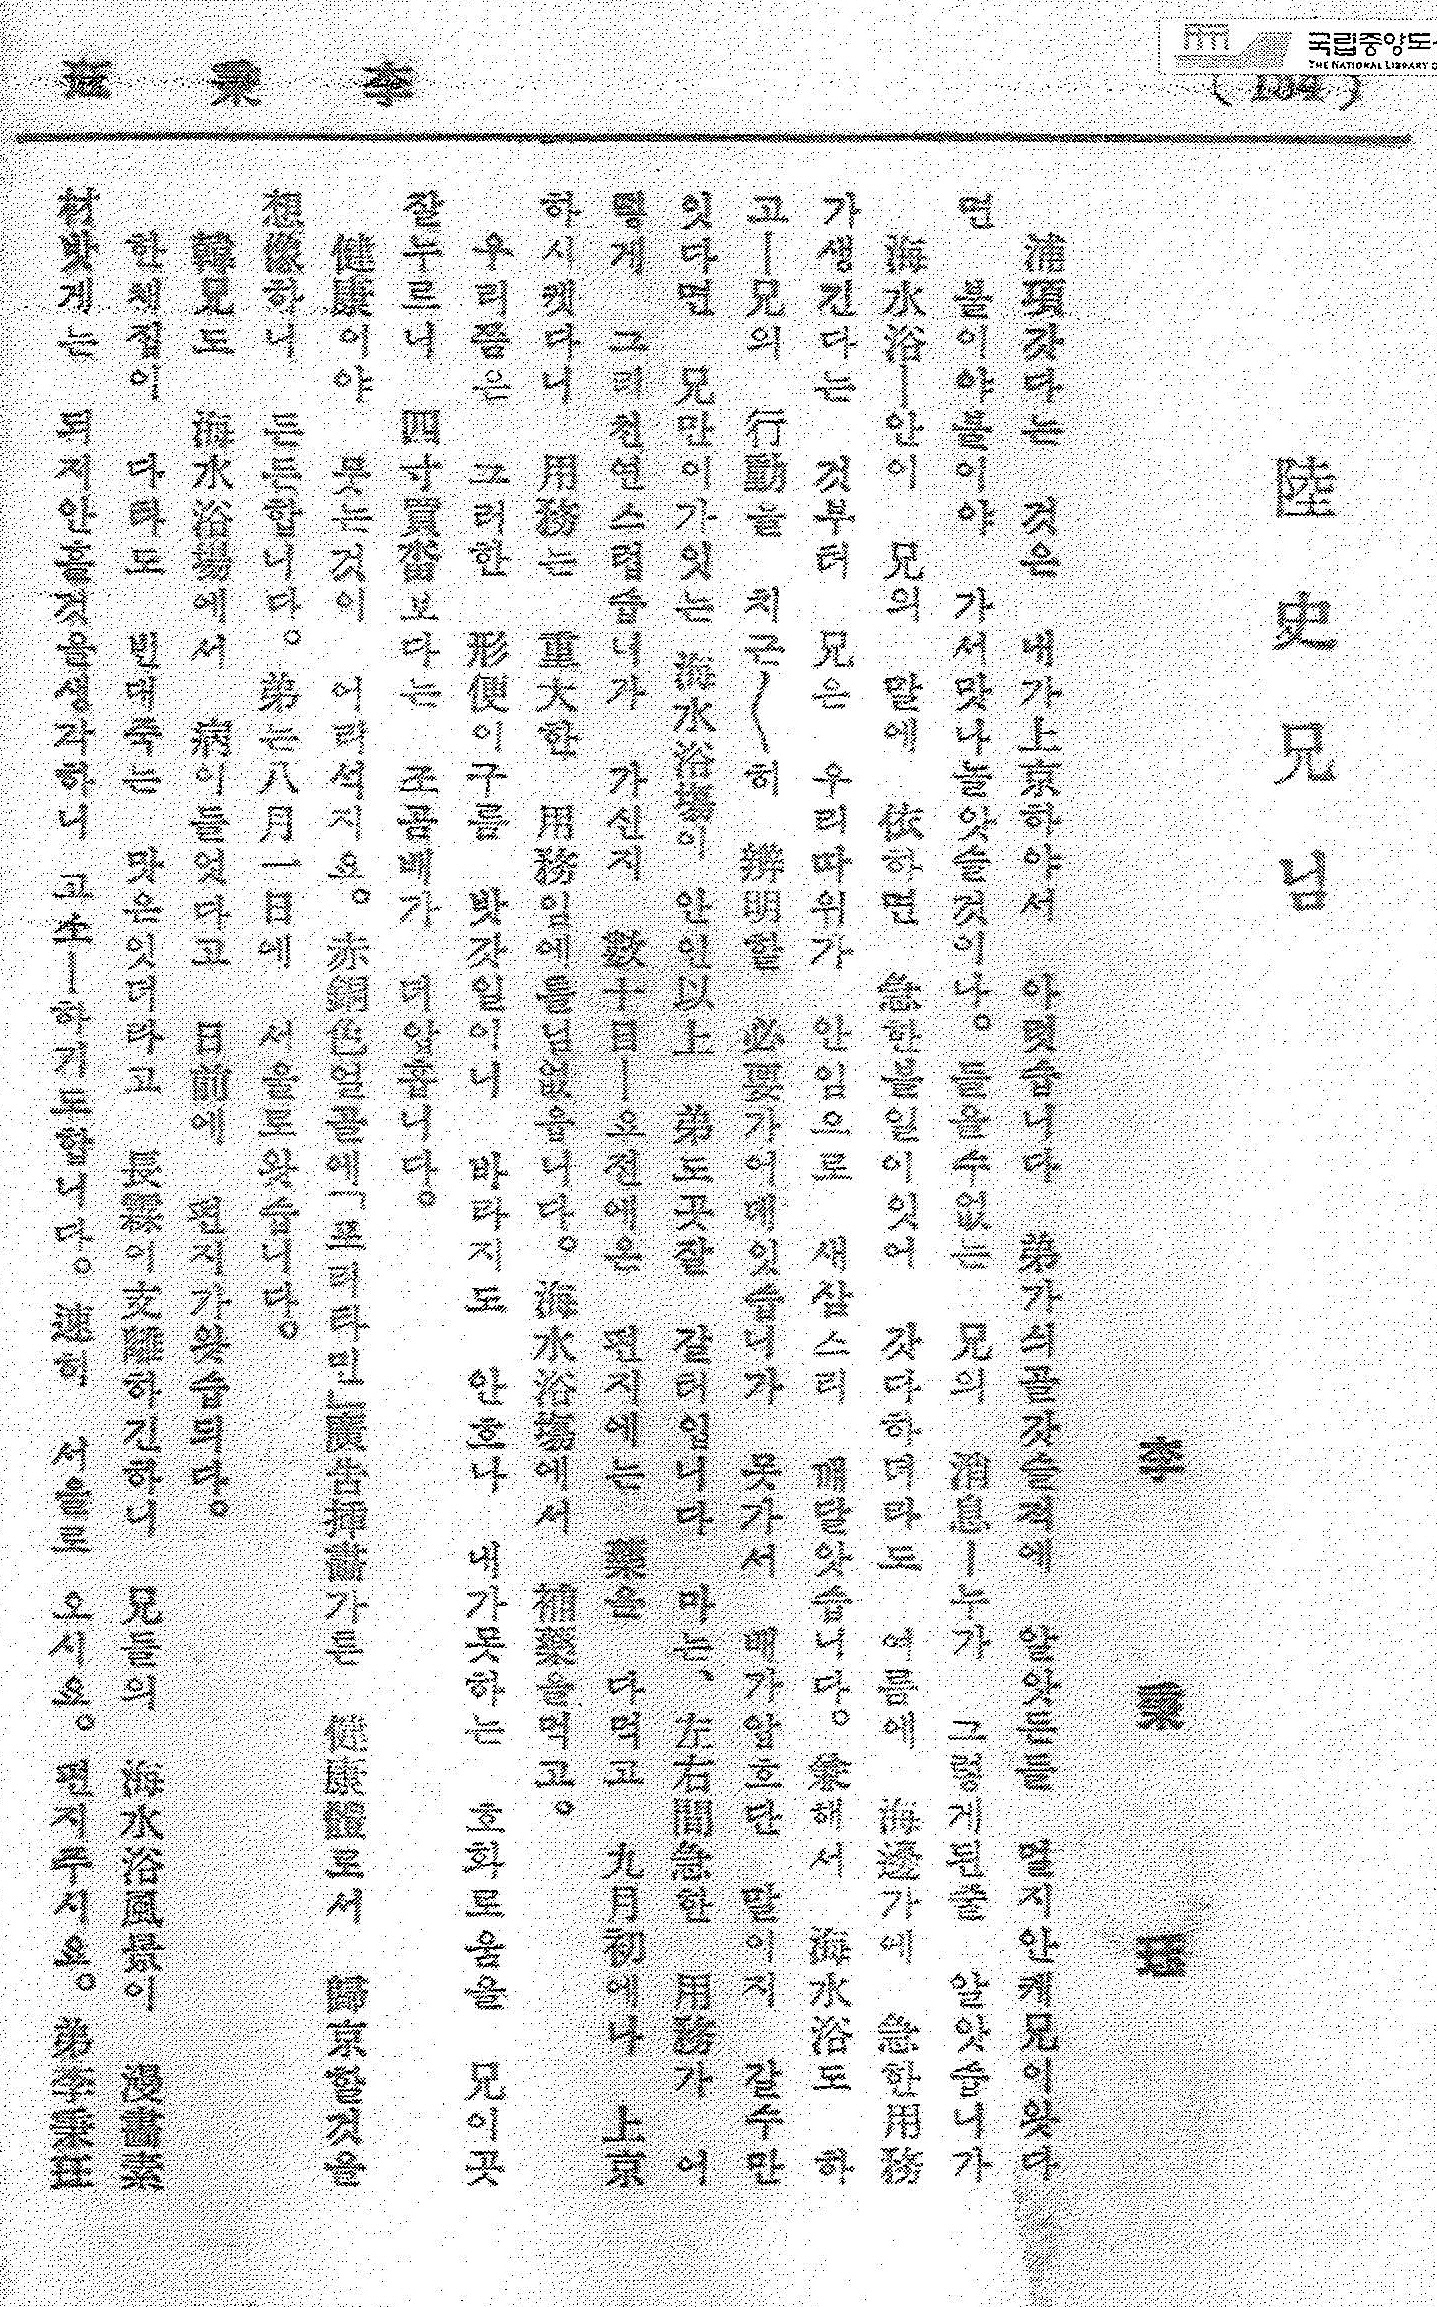 육사의 포항행과 관련된 편지 이병각의 ‘육사형님’